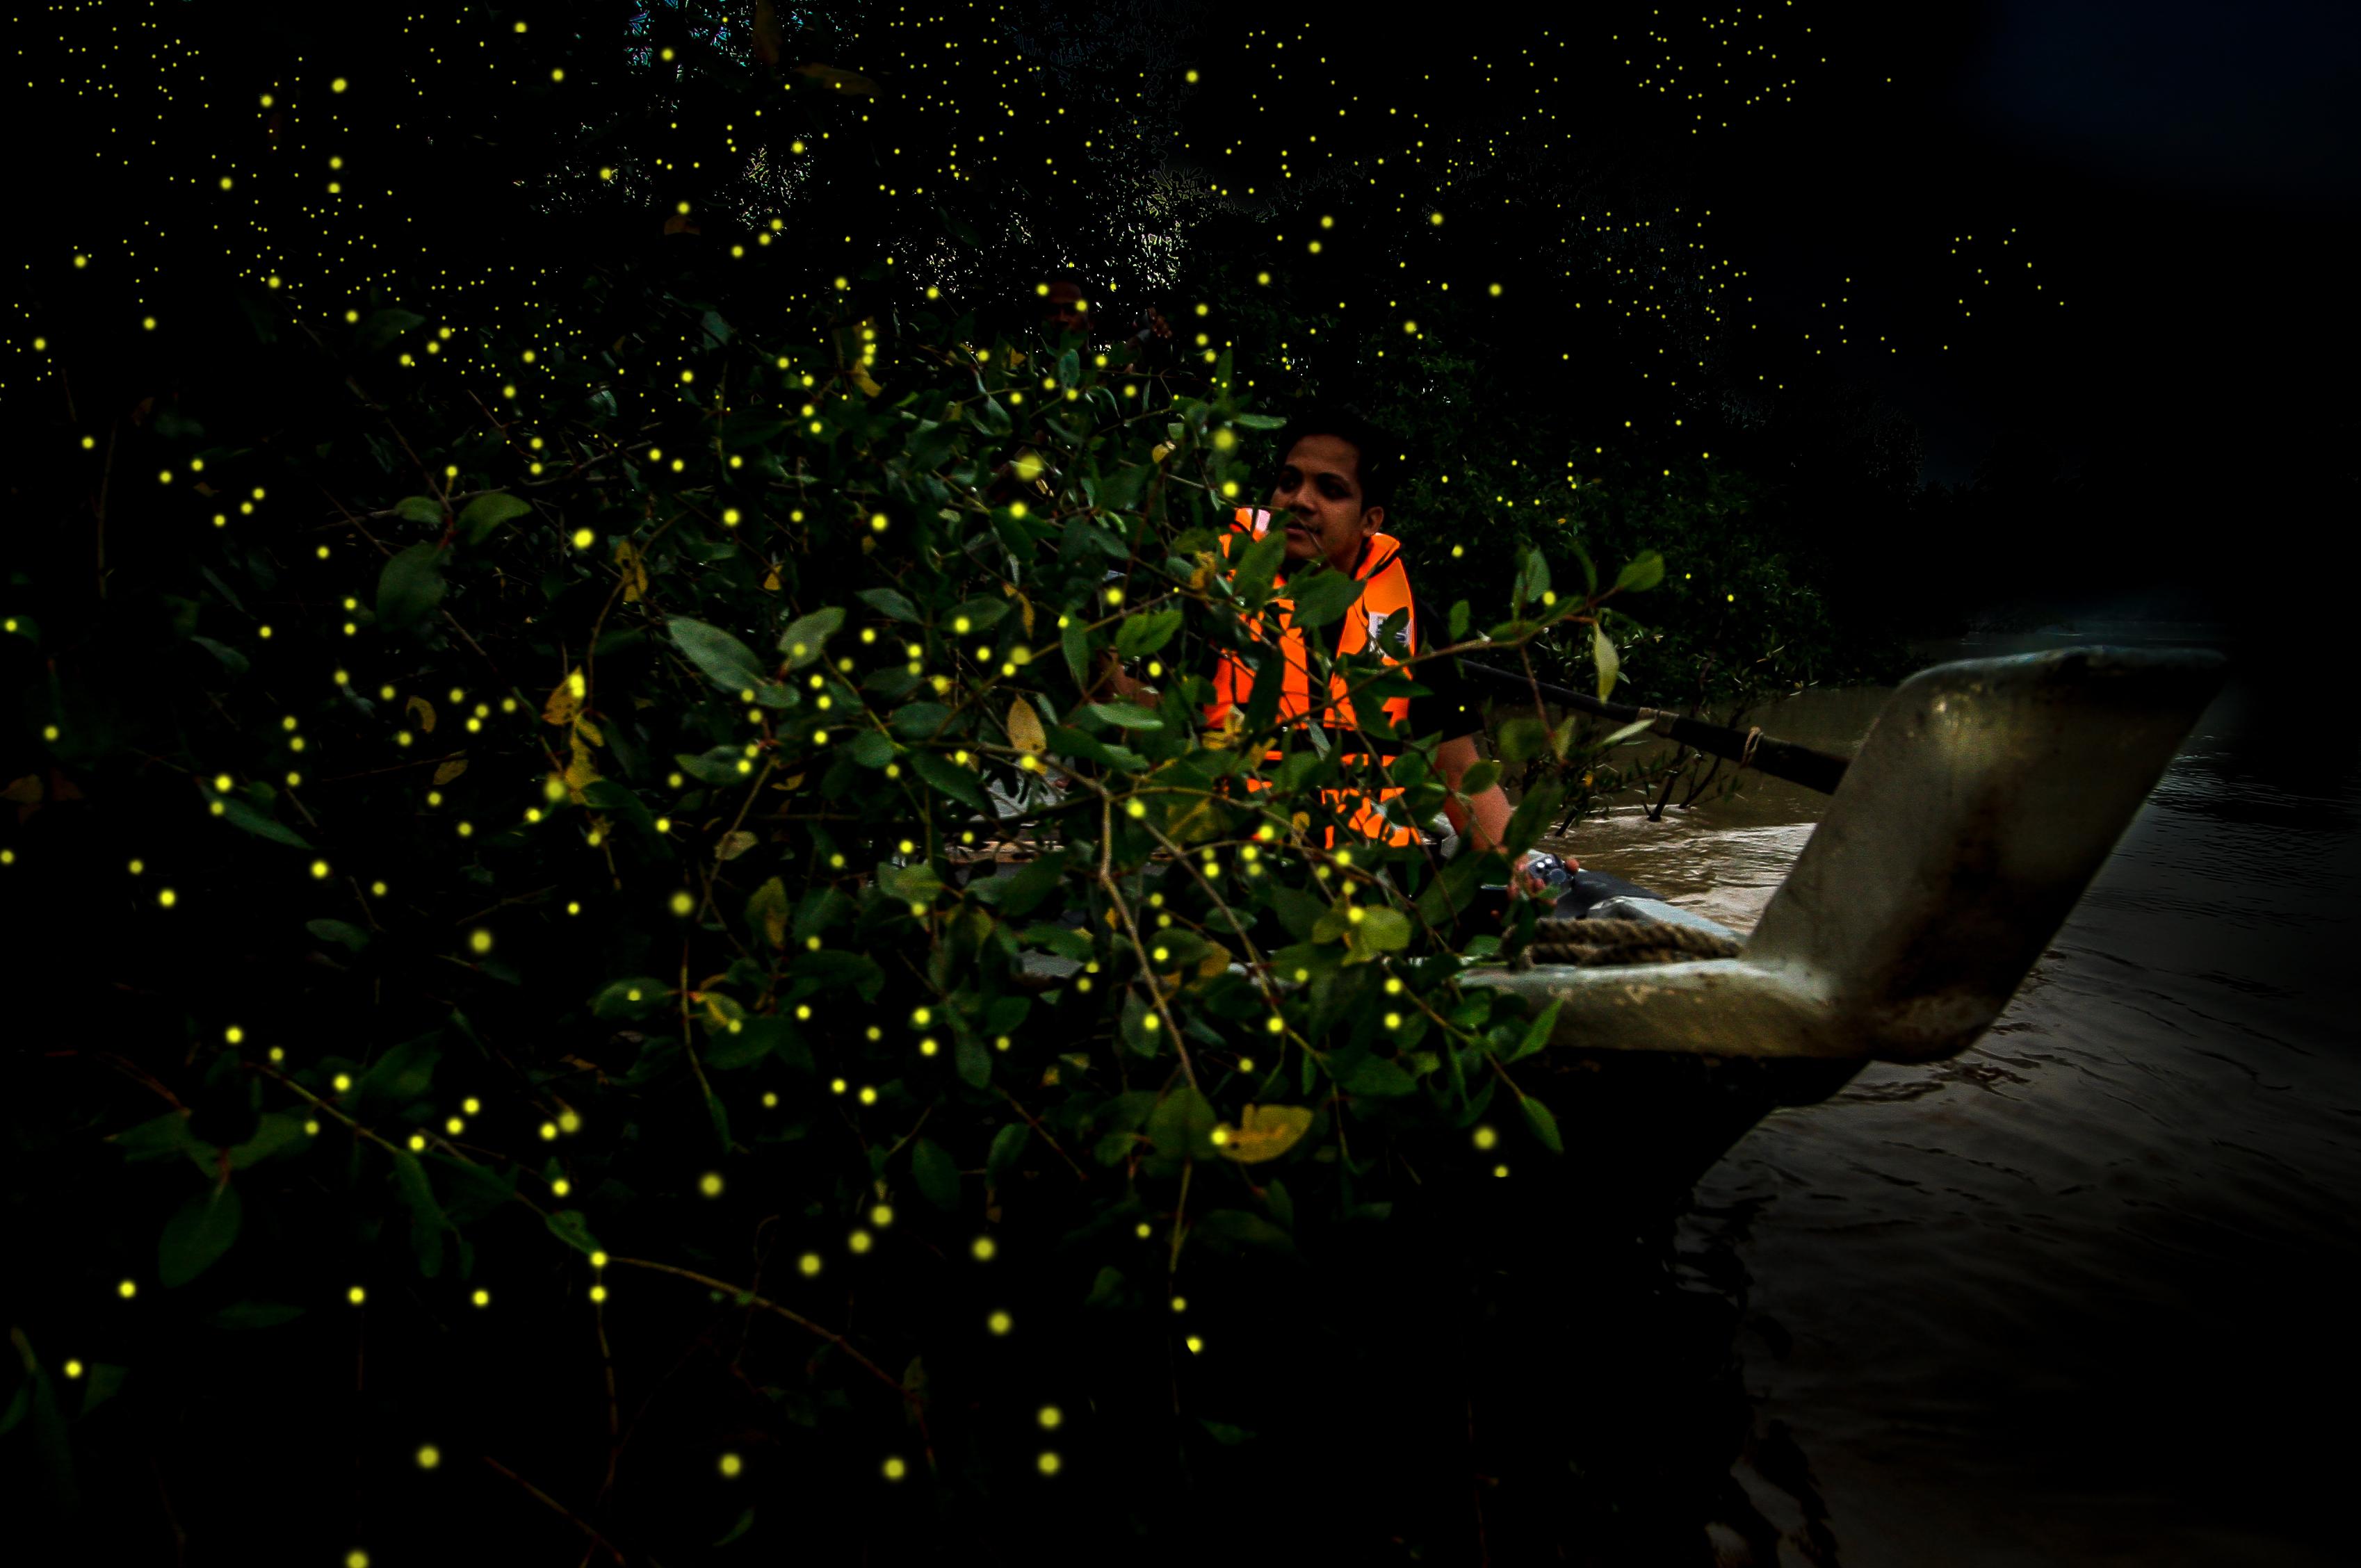 Firefly (Fireflies)